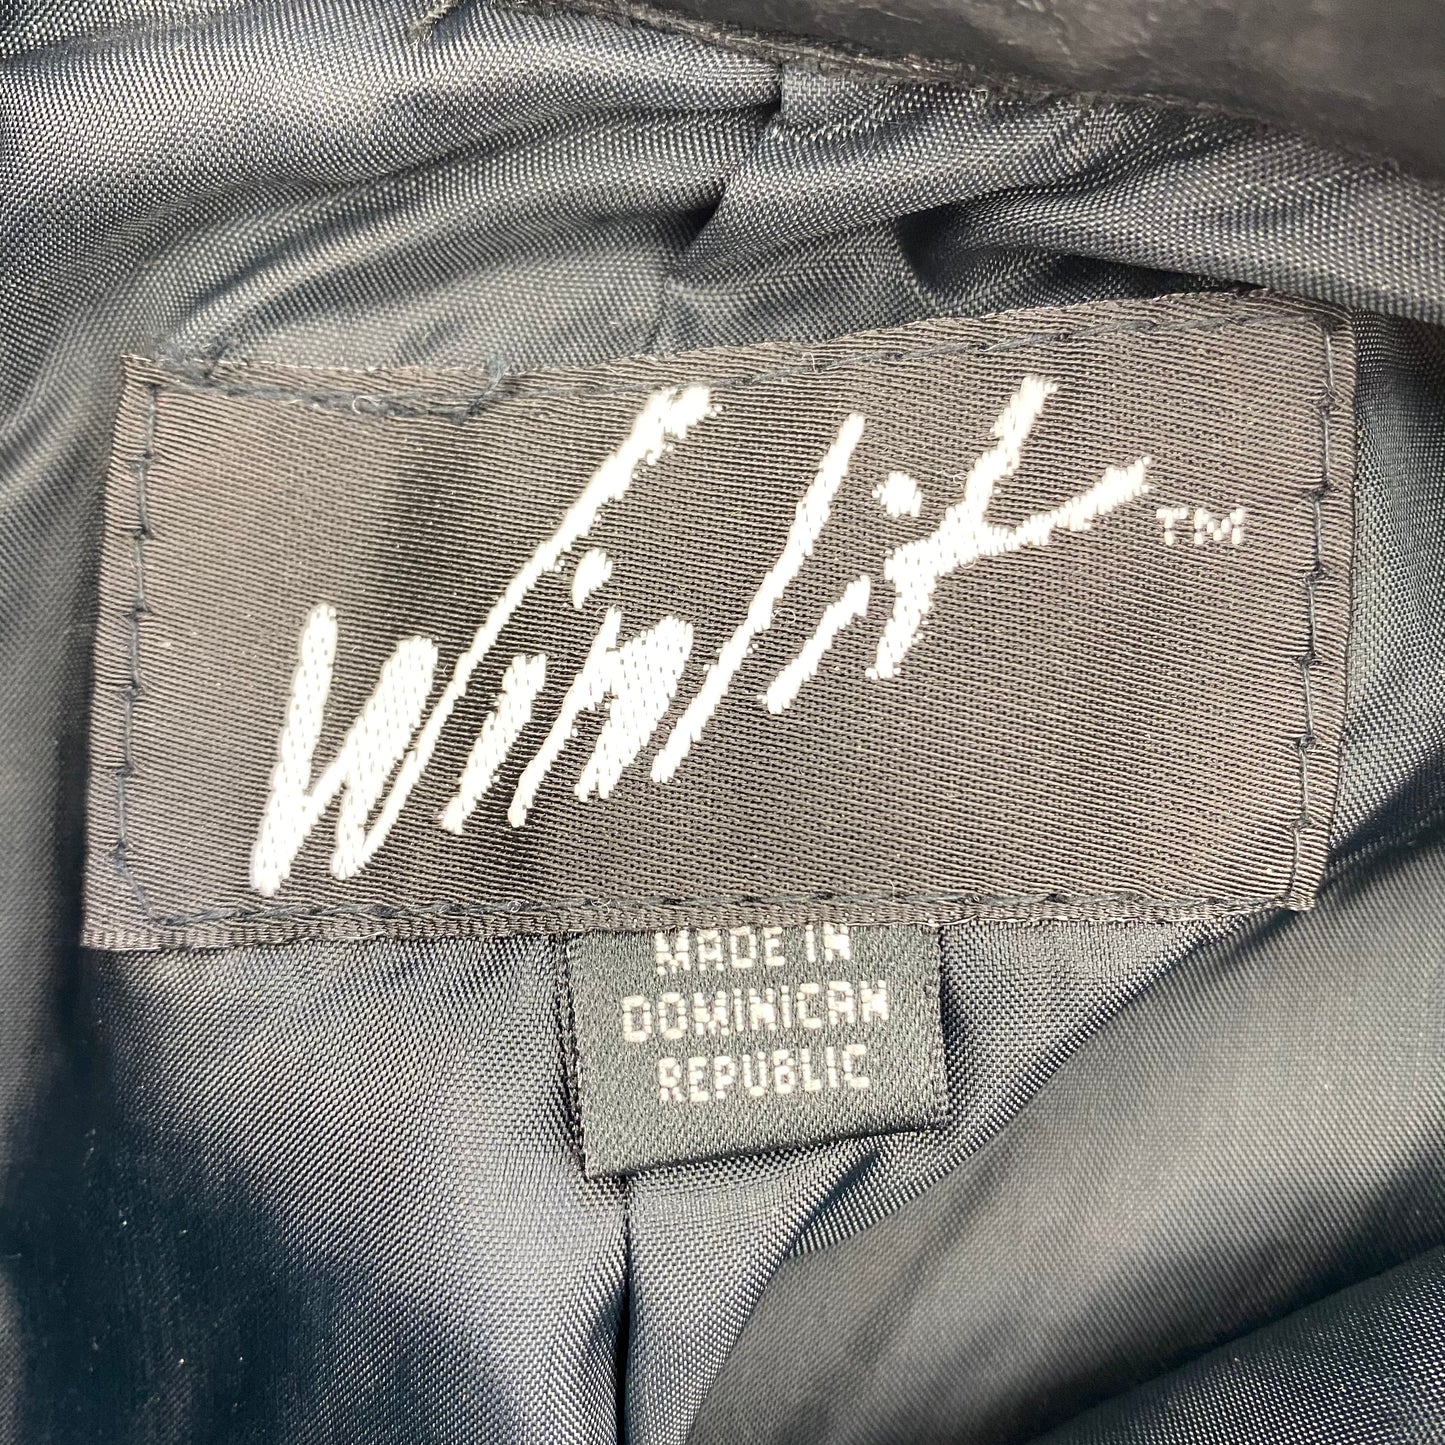 Vintage Winlit Leather Midi Skirt